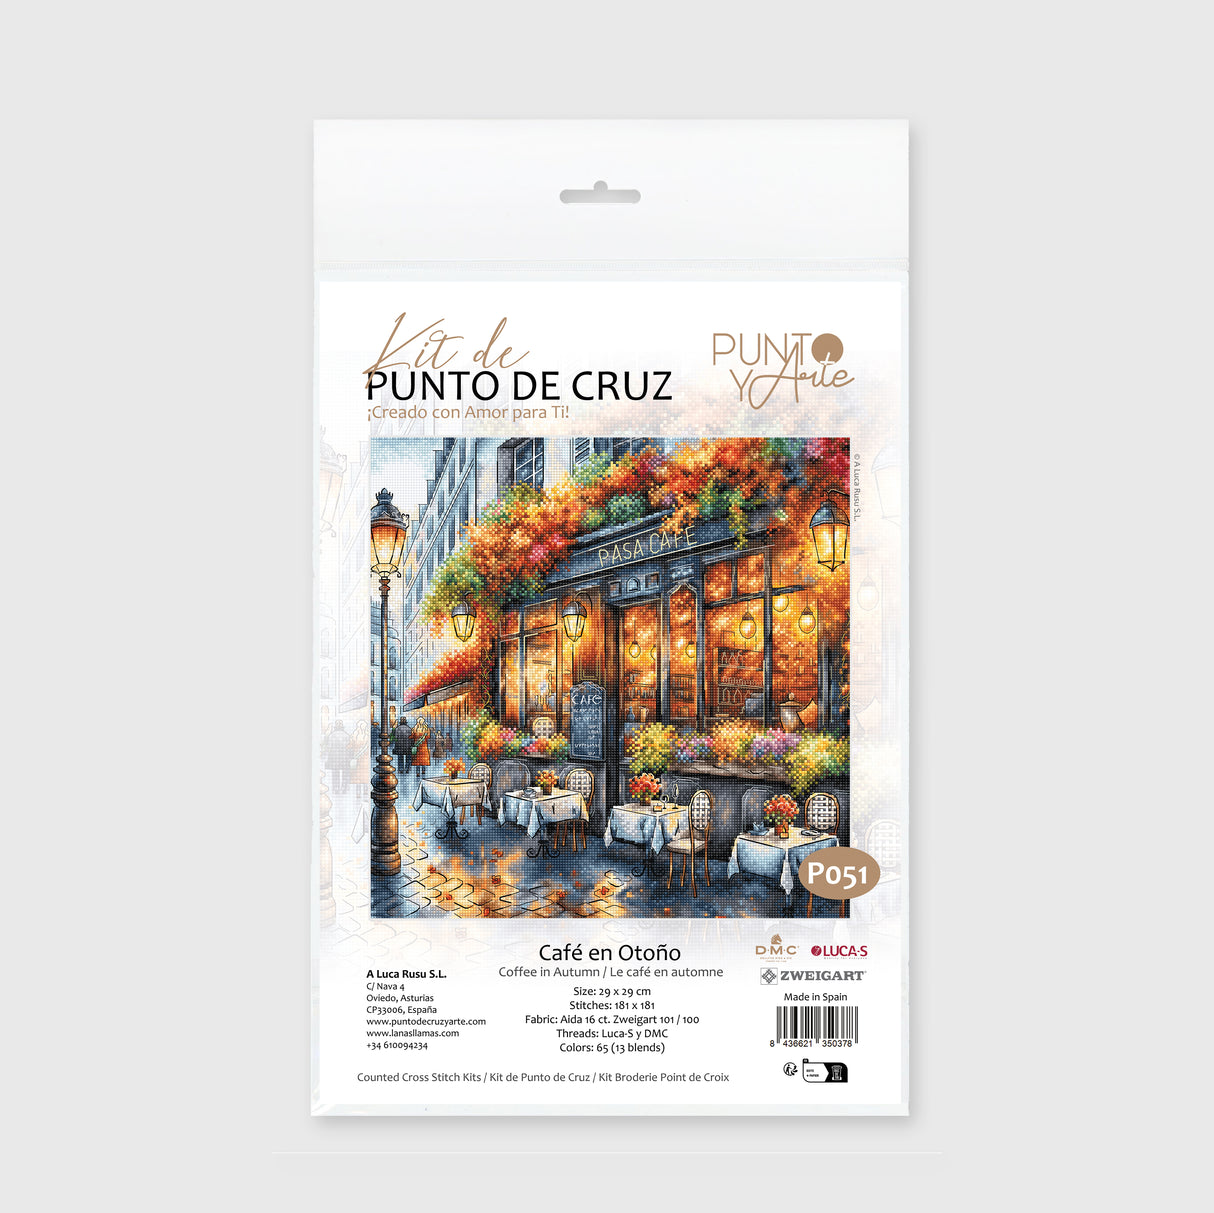 P051 Café en Otoño - Kit de Punto de Cruz de Punto y Arte